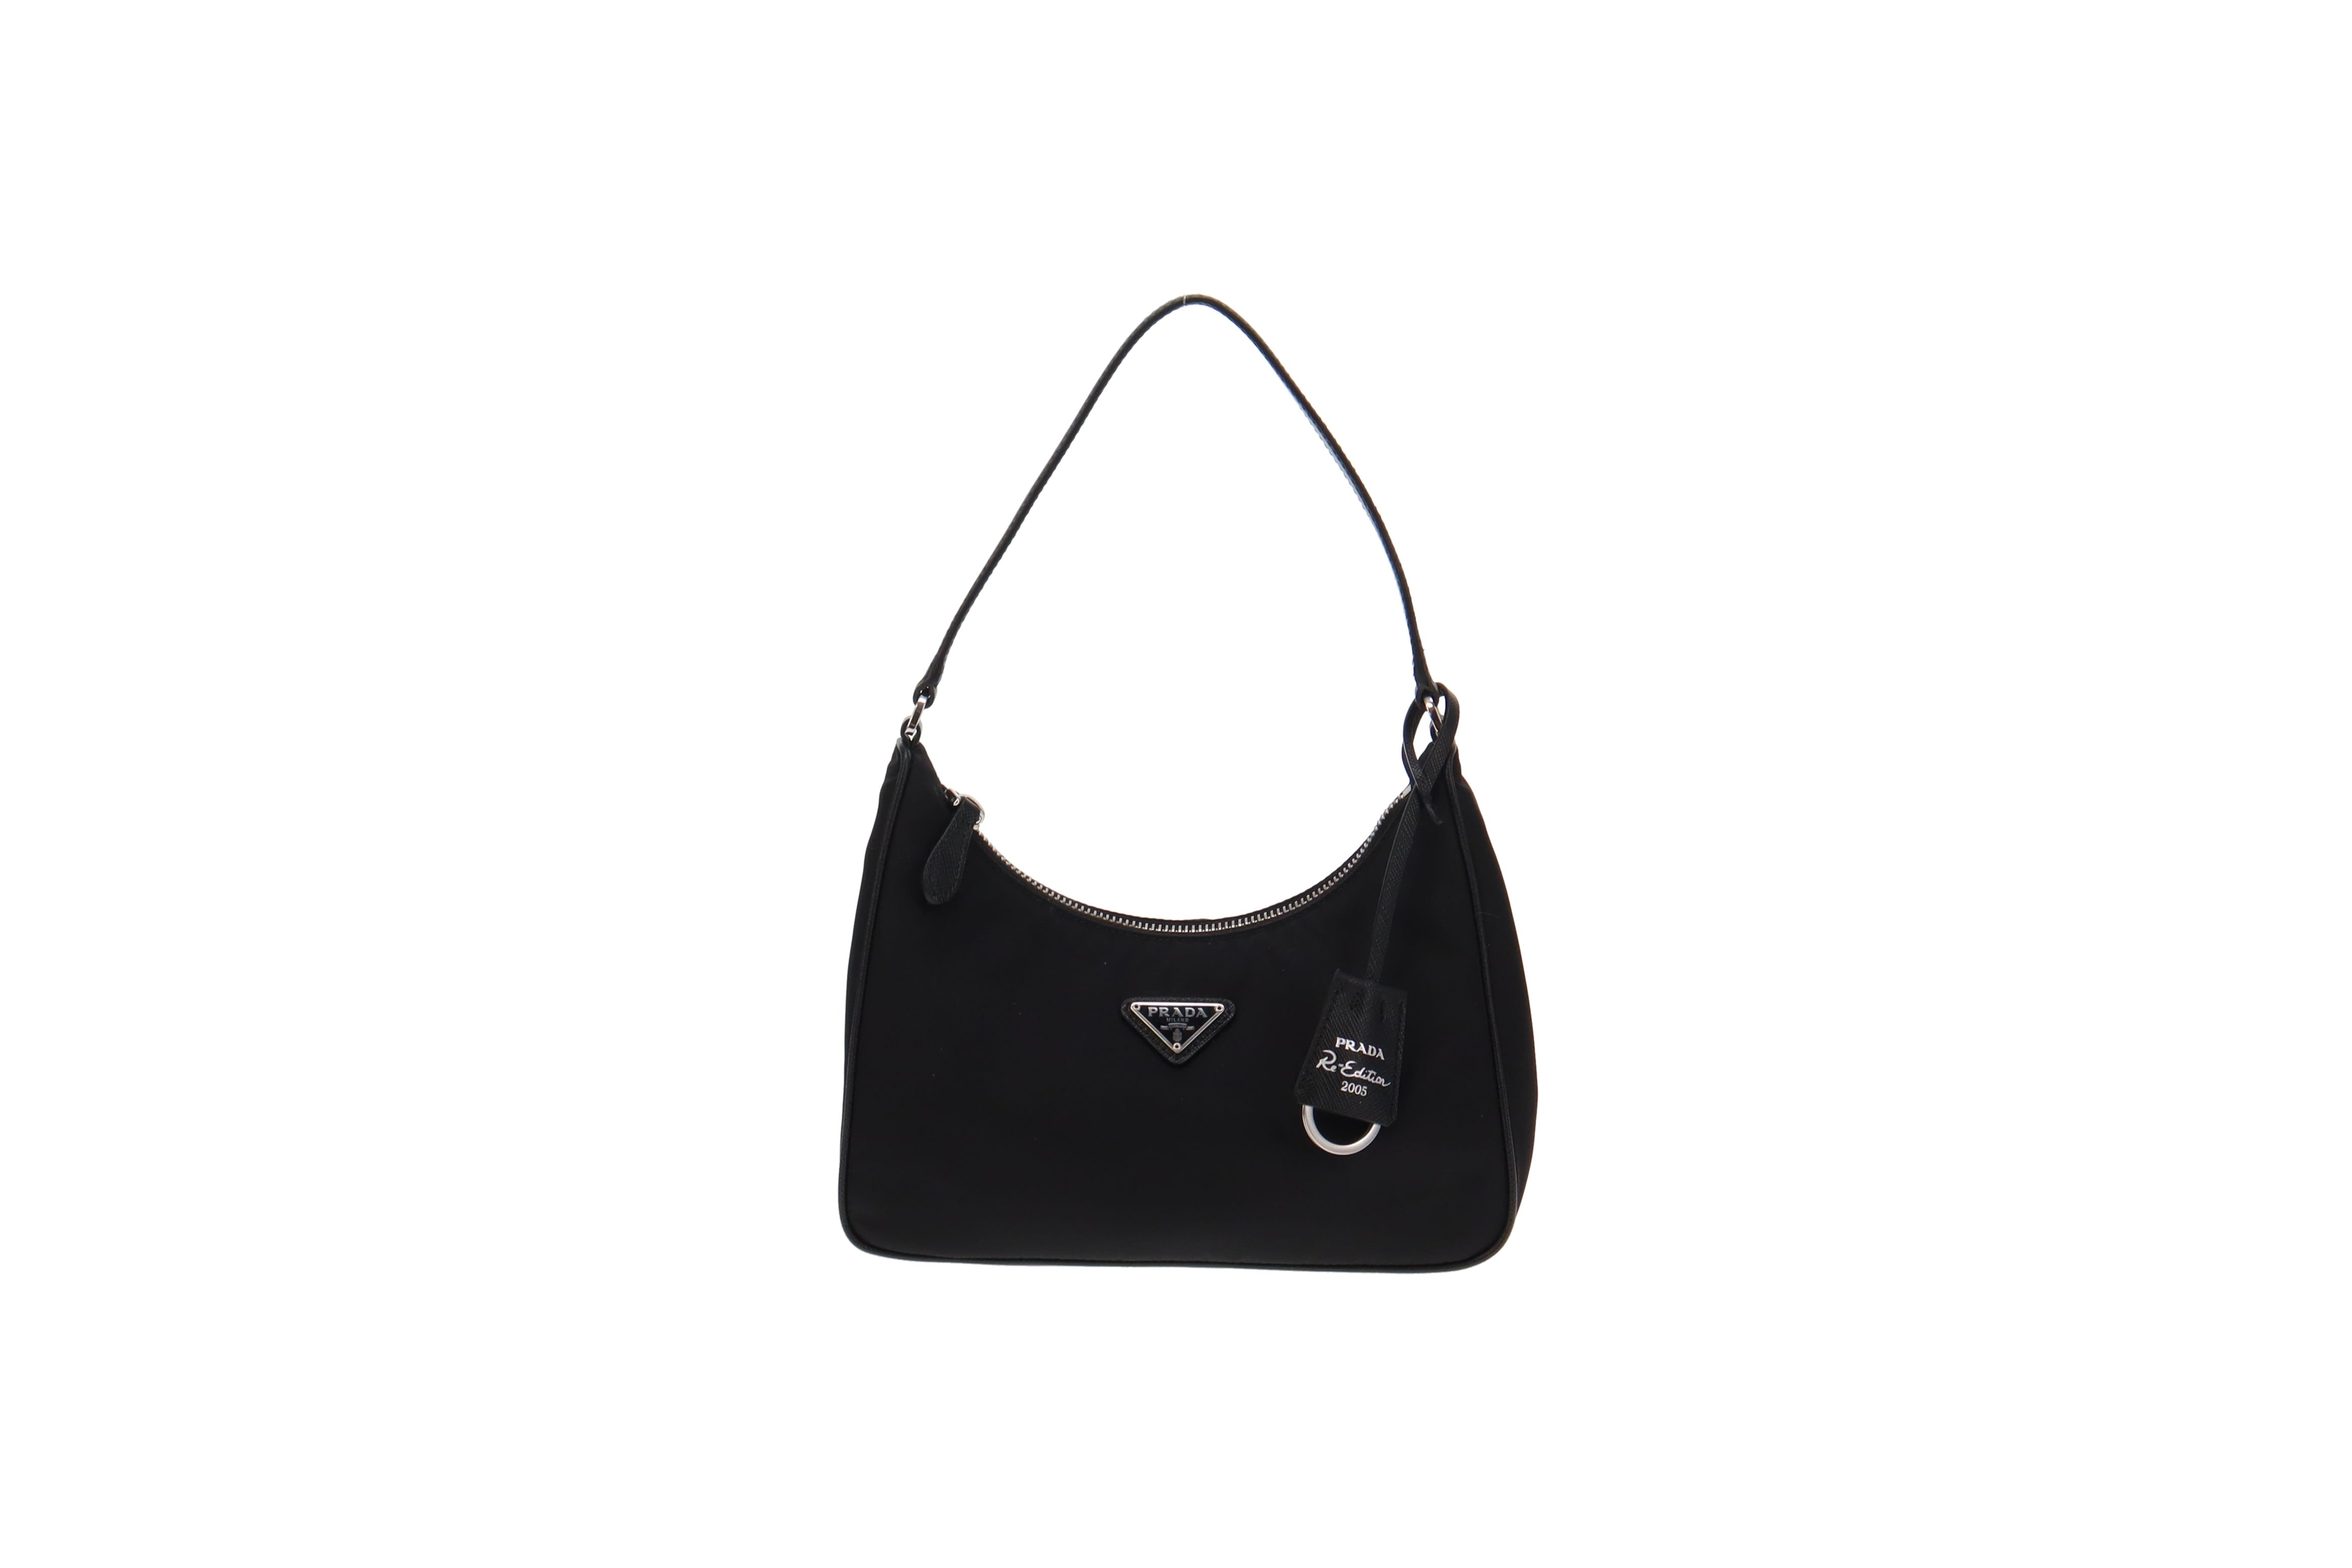 Prada Re-Edition 2005 Mini Bag Nylon Saffiano Leather Strap Black in  Nylon/Saffiano Leather with Silver-tone - US